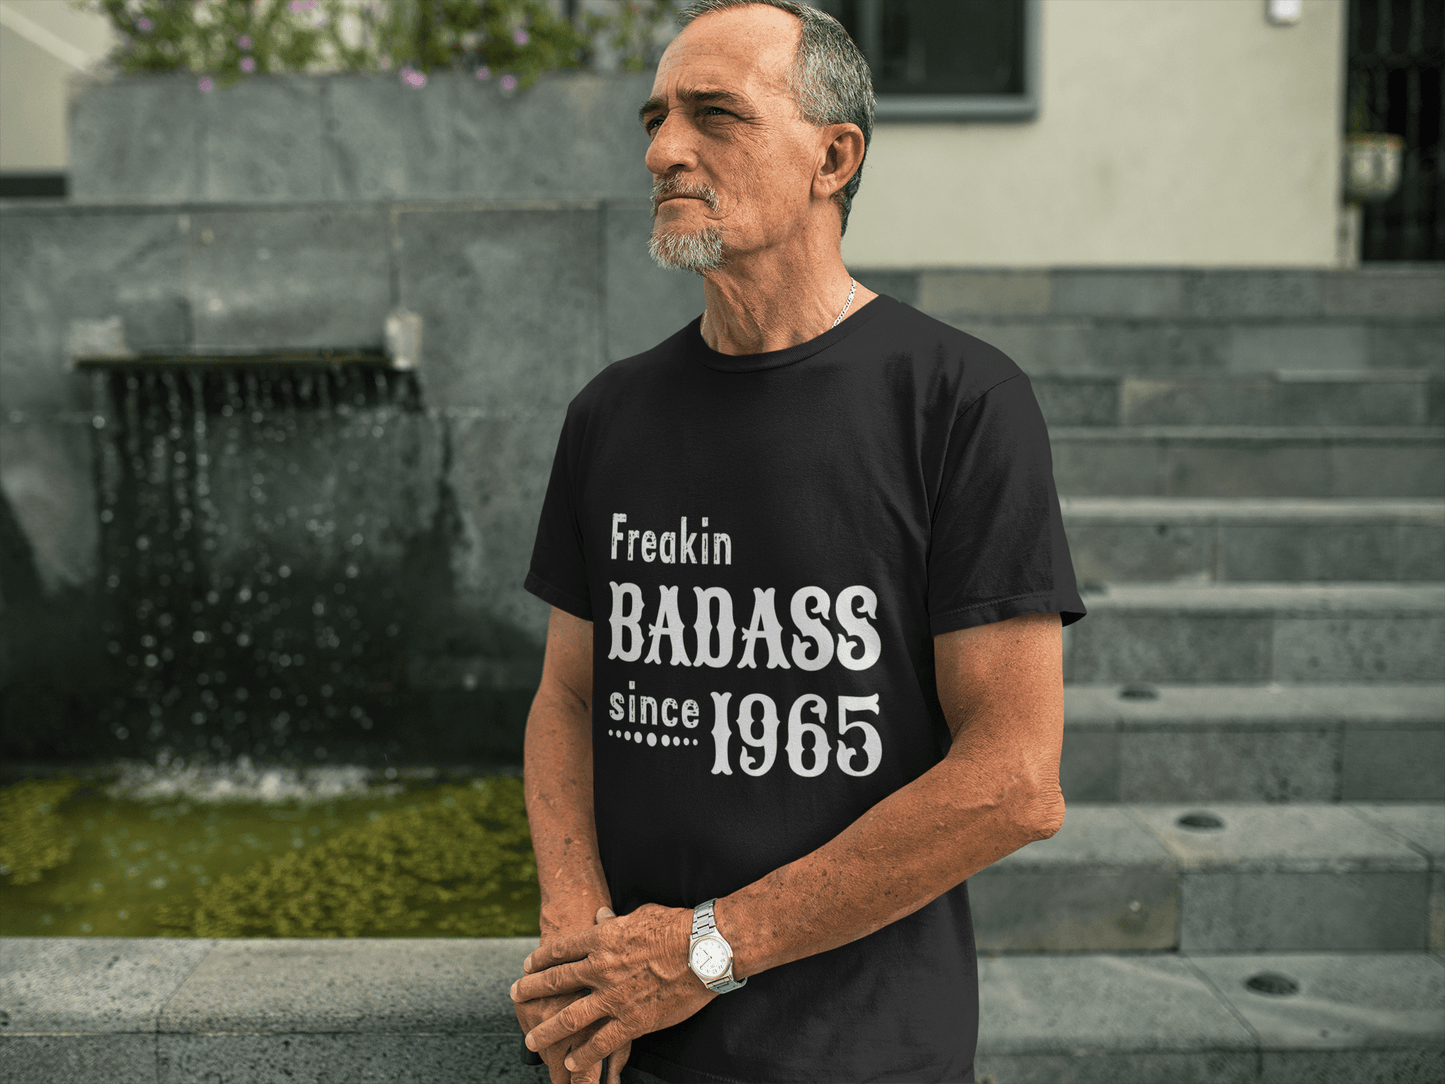 Freakin Badass Since 1995 Herren T-Shirt Schwarz Geburtstagsgeschenk 00393